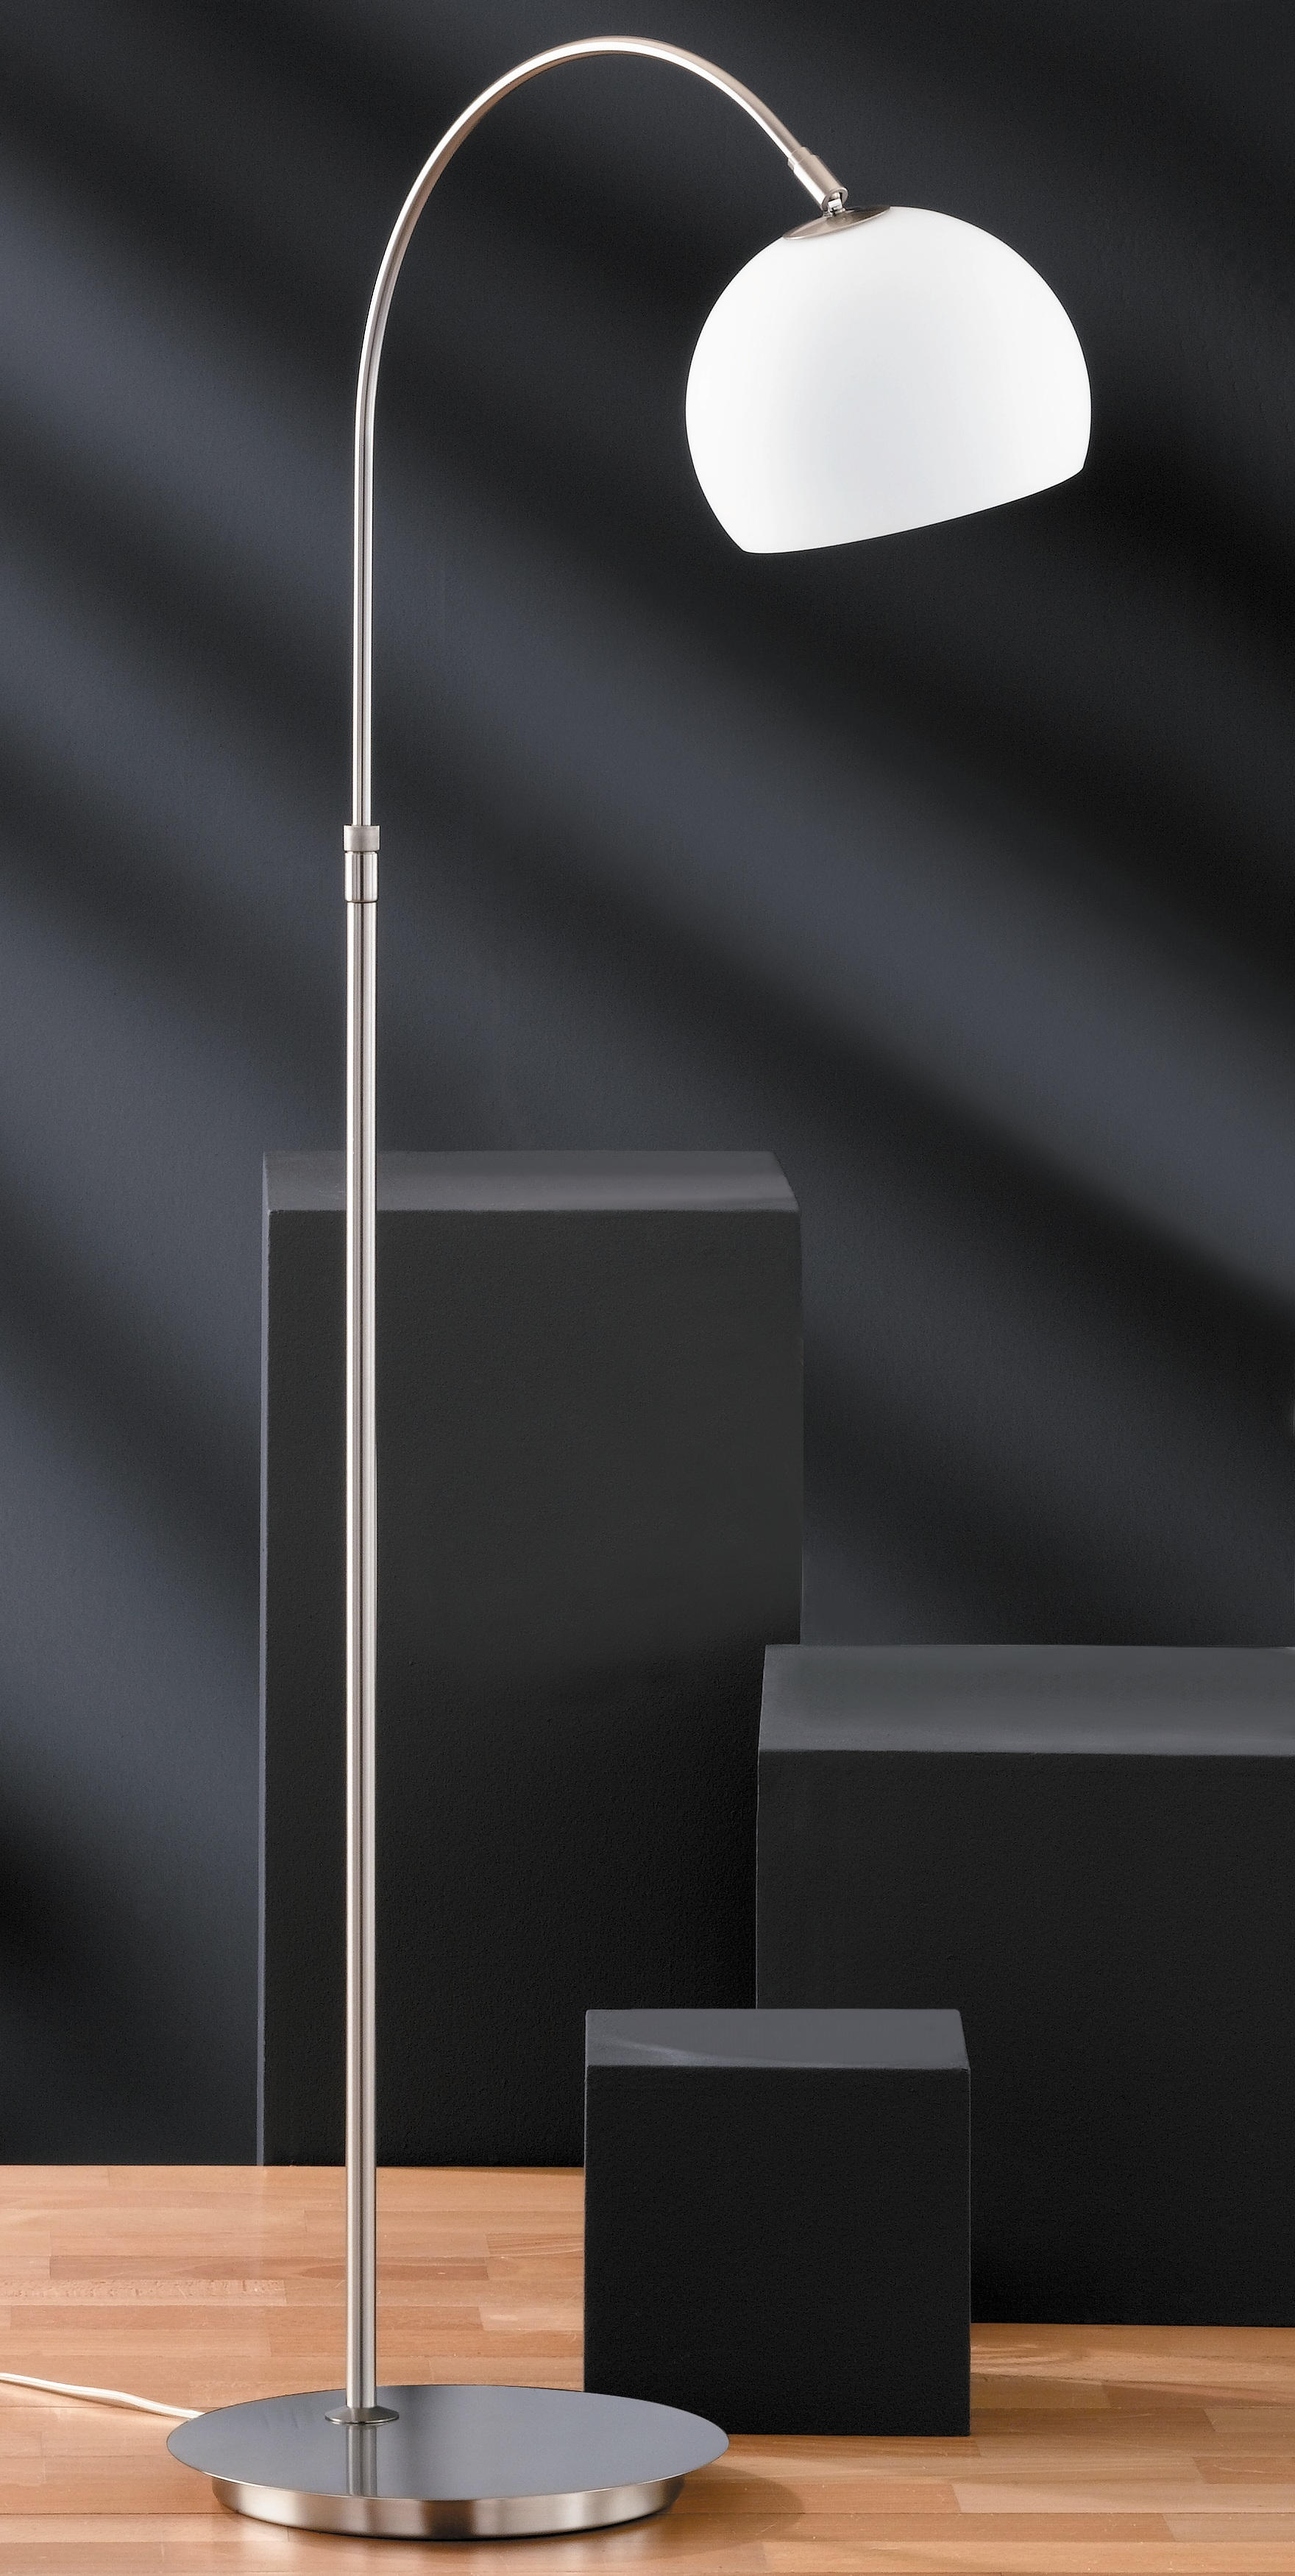 BOGENLEUCHTE Bow  - Weiß/Nickelfarben, Design, Glas/Metall (140cm) - Fischer & Honsel